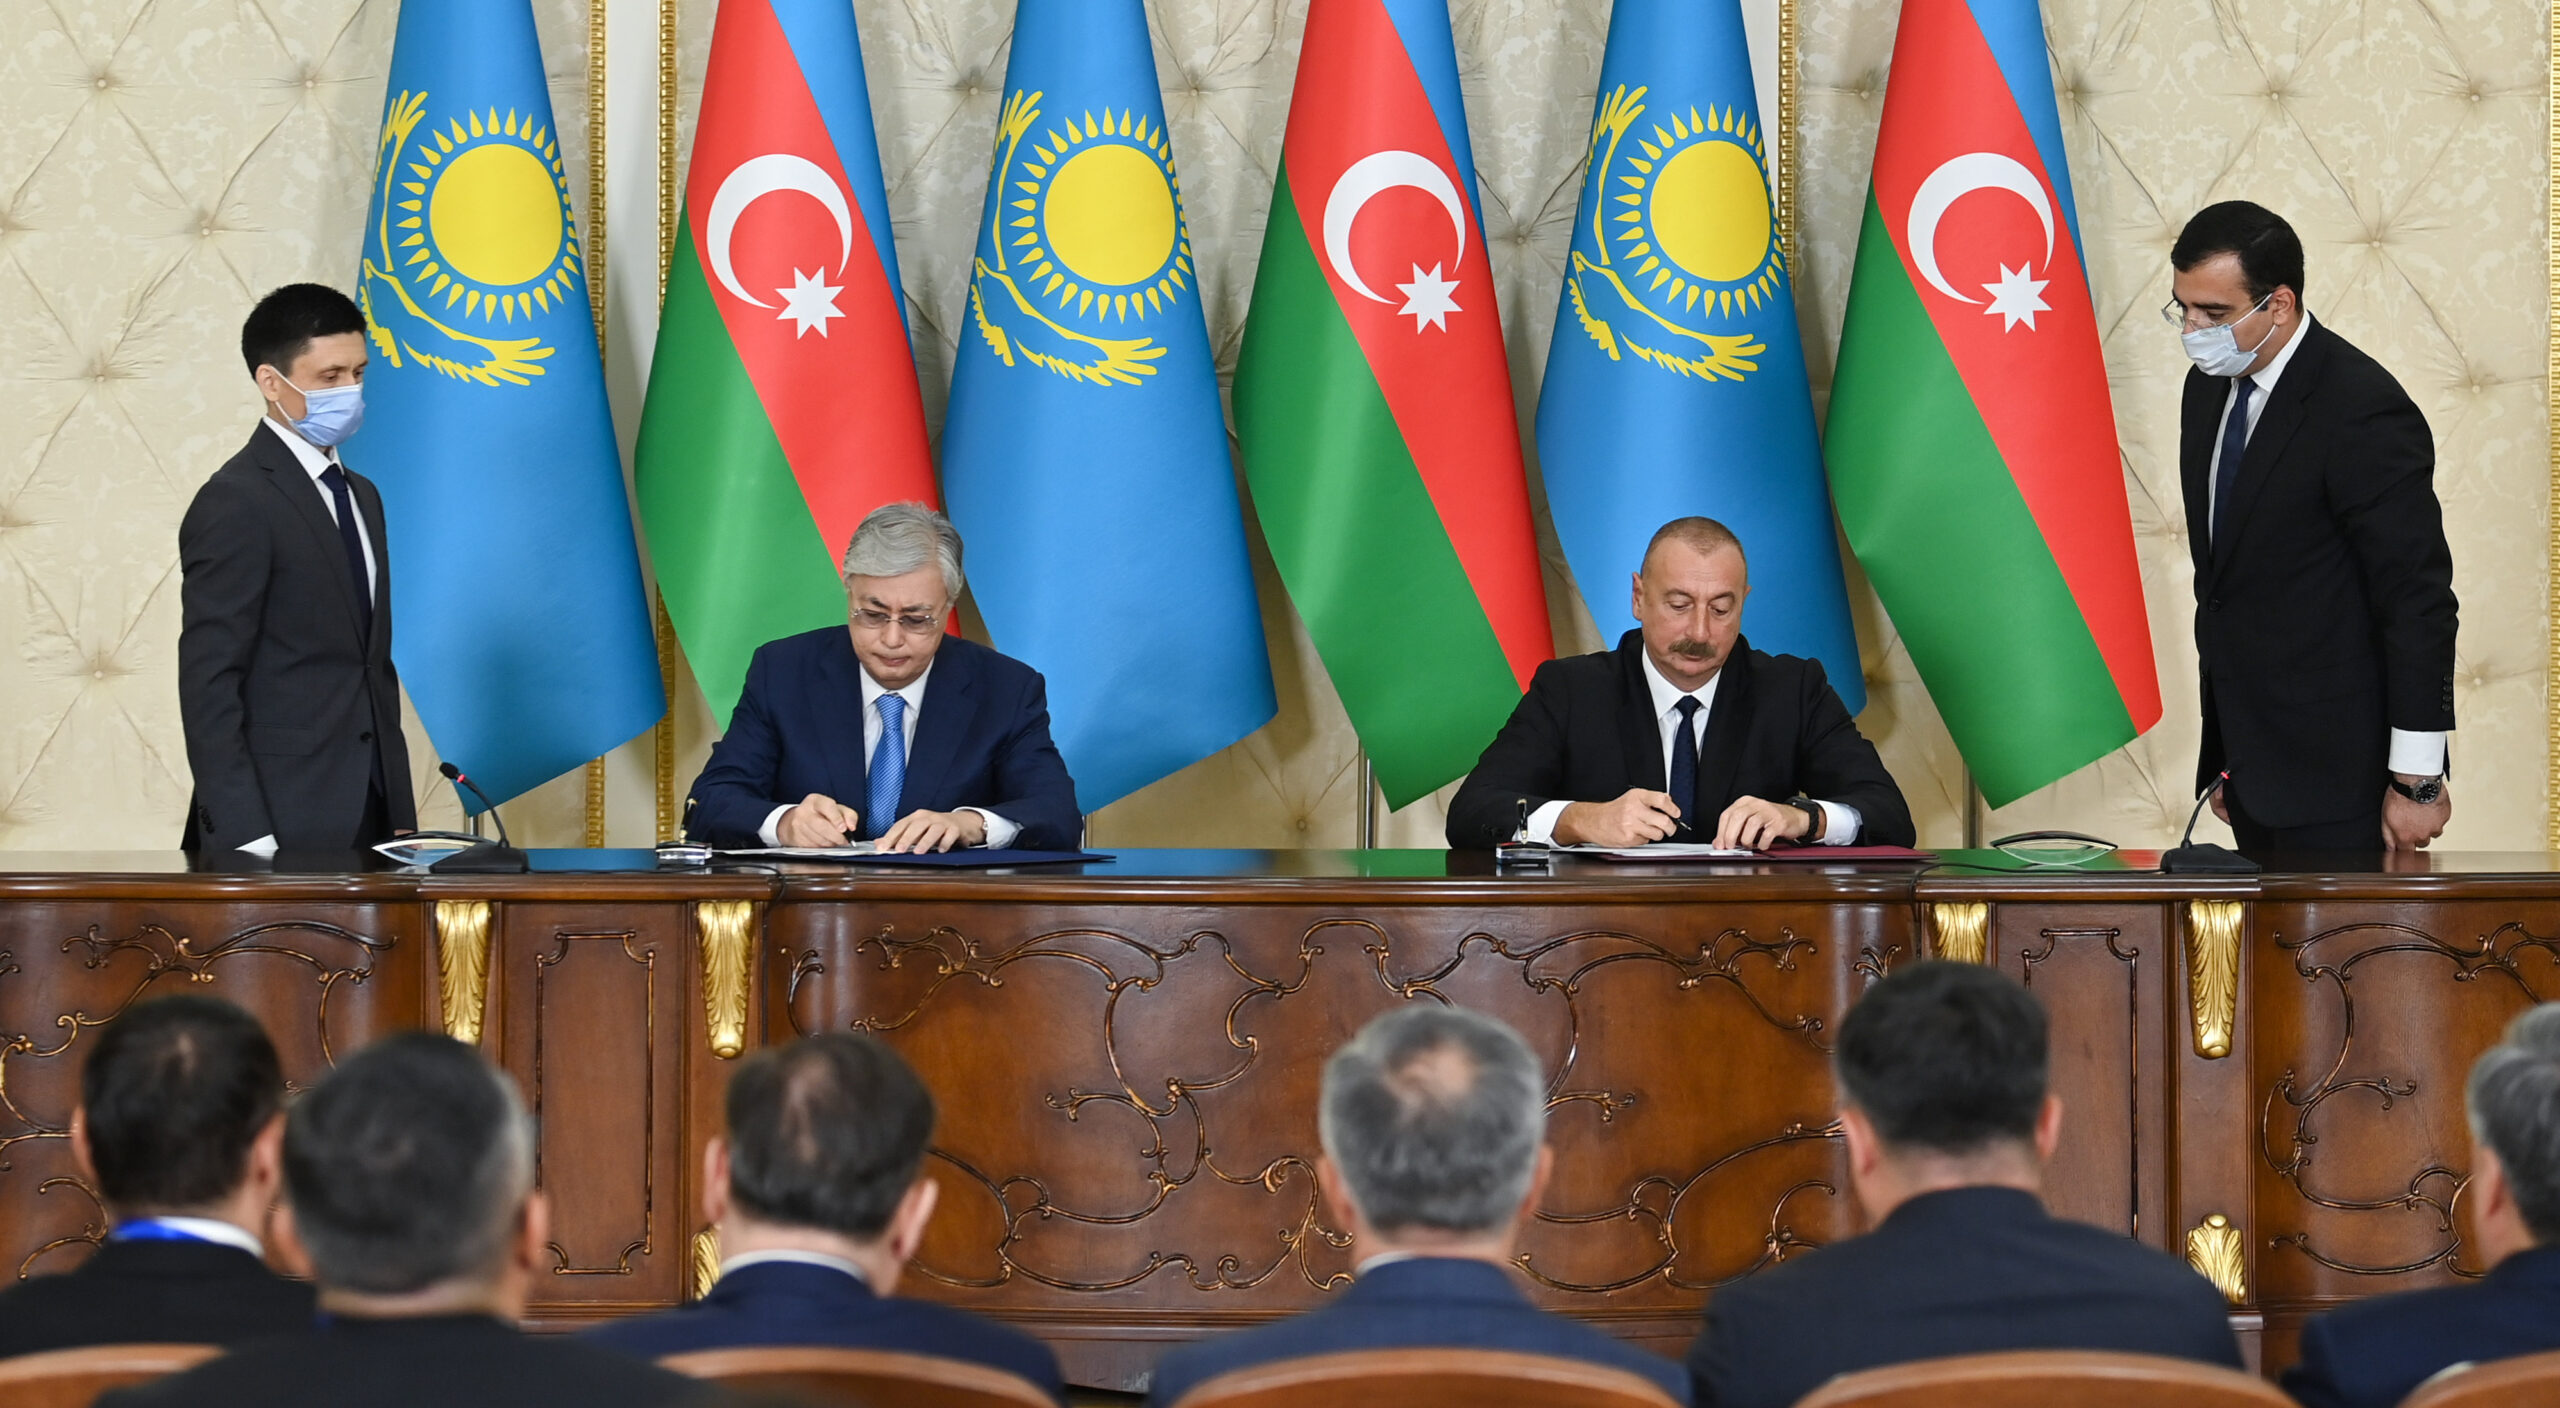 Ադրբեջանի առնչությամբ Ղազախստանը միշտ պաշտպանել է տարածքային ամբողջականության սկզբունքը. Ղազախստանի նախագահ